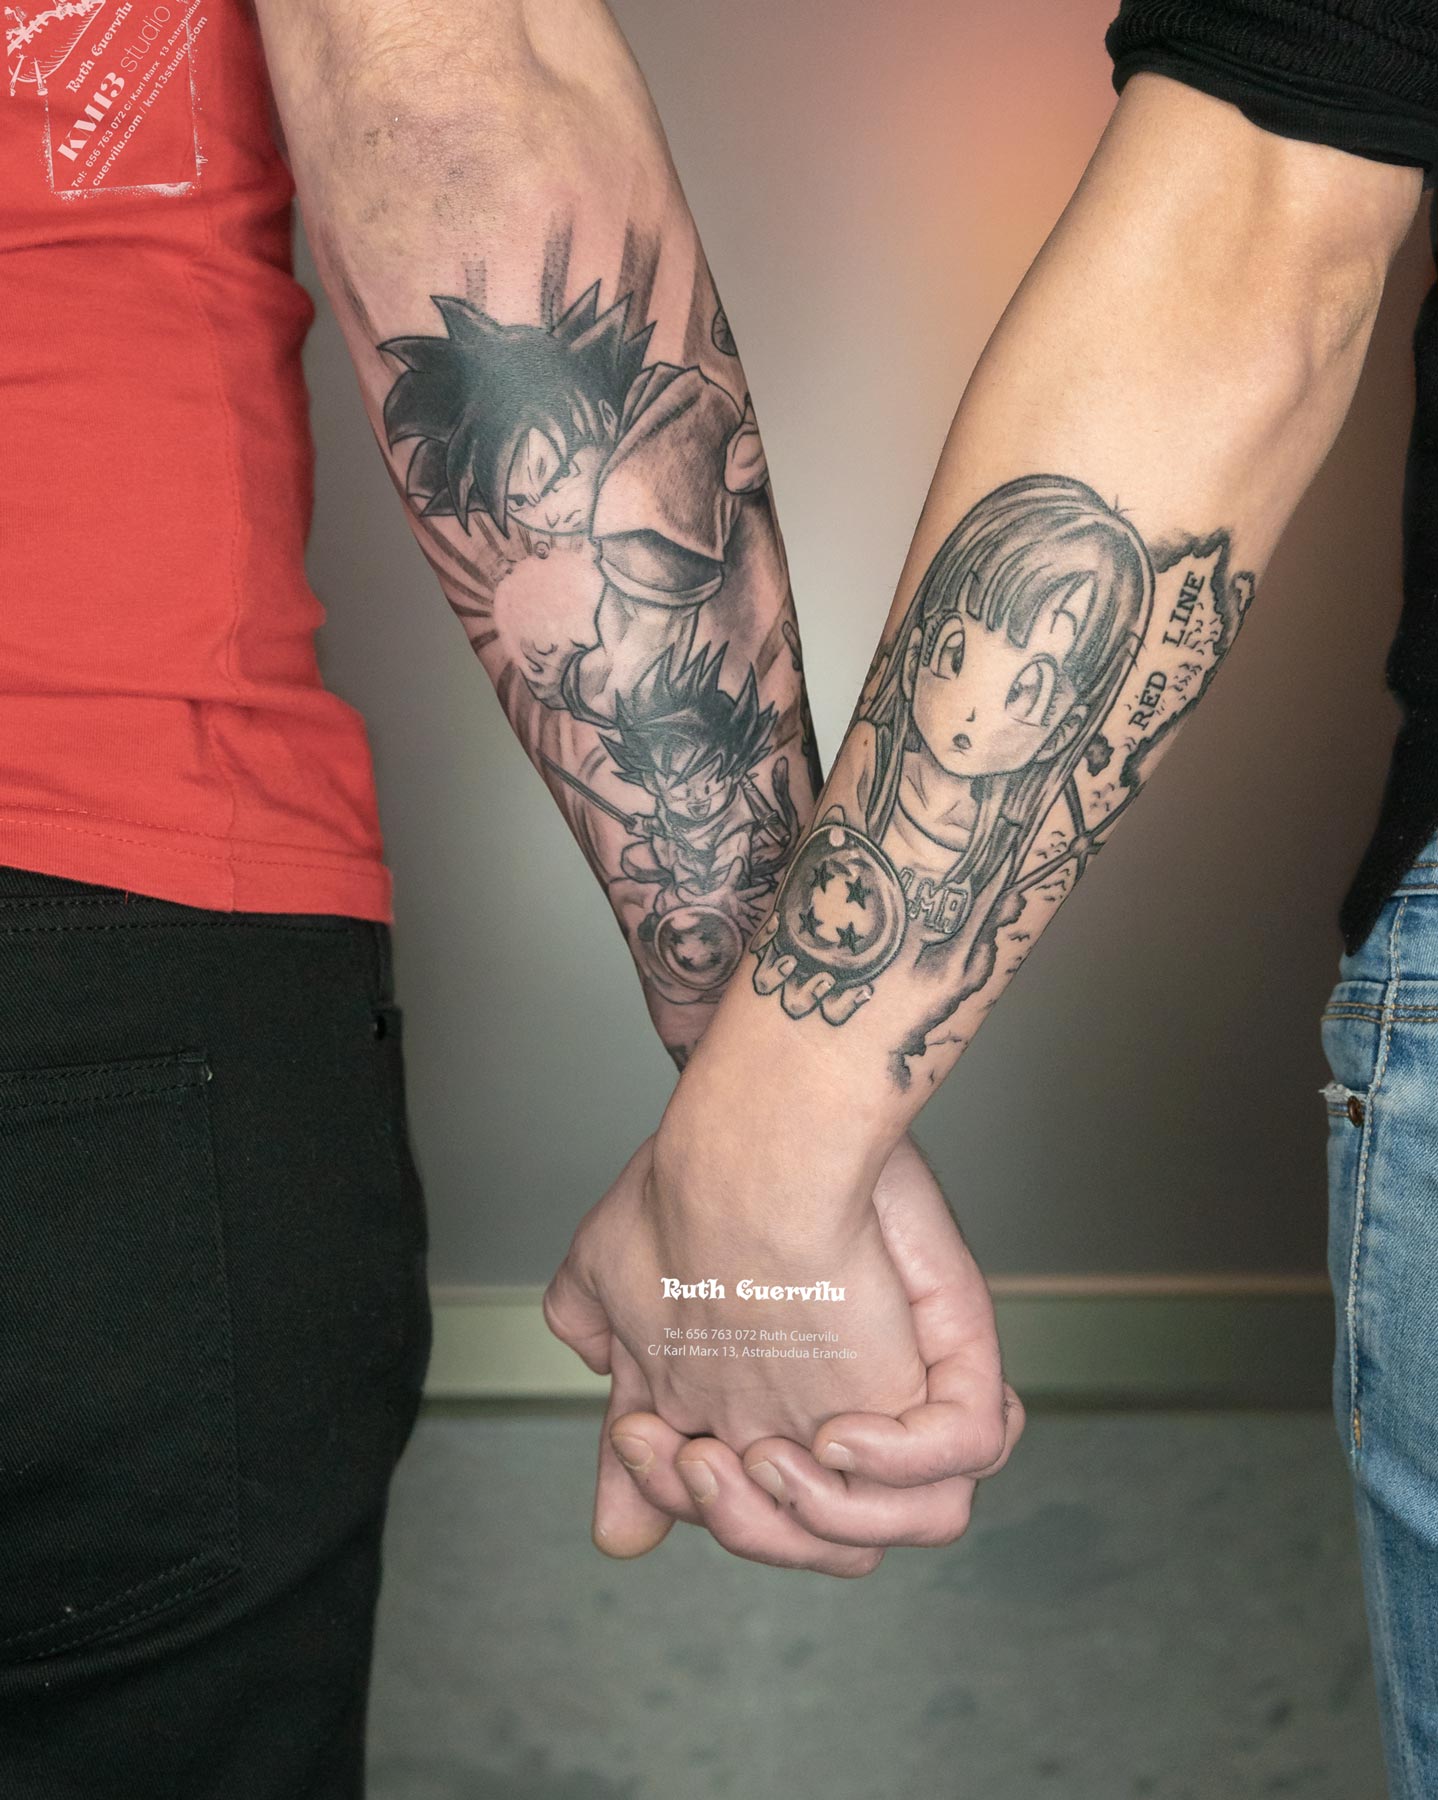 Tatuaje Dragon Ball Goku y Bulma de la mano - Ruth Cuervilu Tattoo - KM13 Studio - Estudio de tatuajes Astrabudua Erandio Bizkaia Bilbao Barakaldo Getxo Leioa Gasteiz Donostia